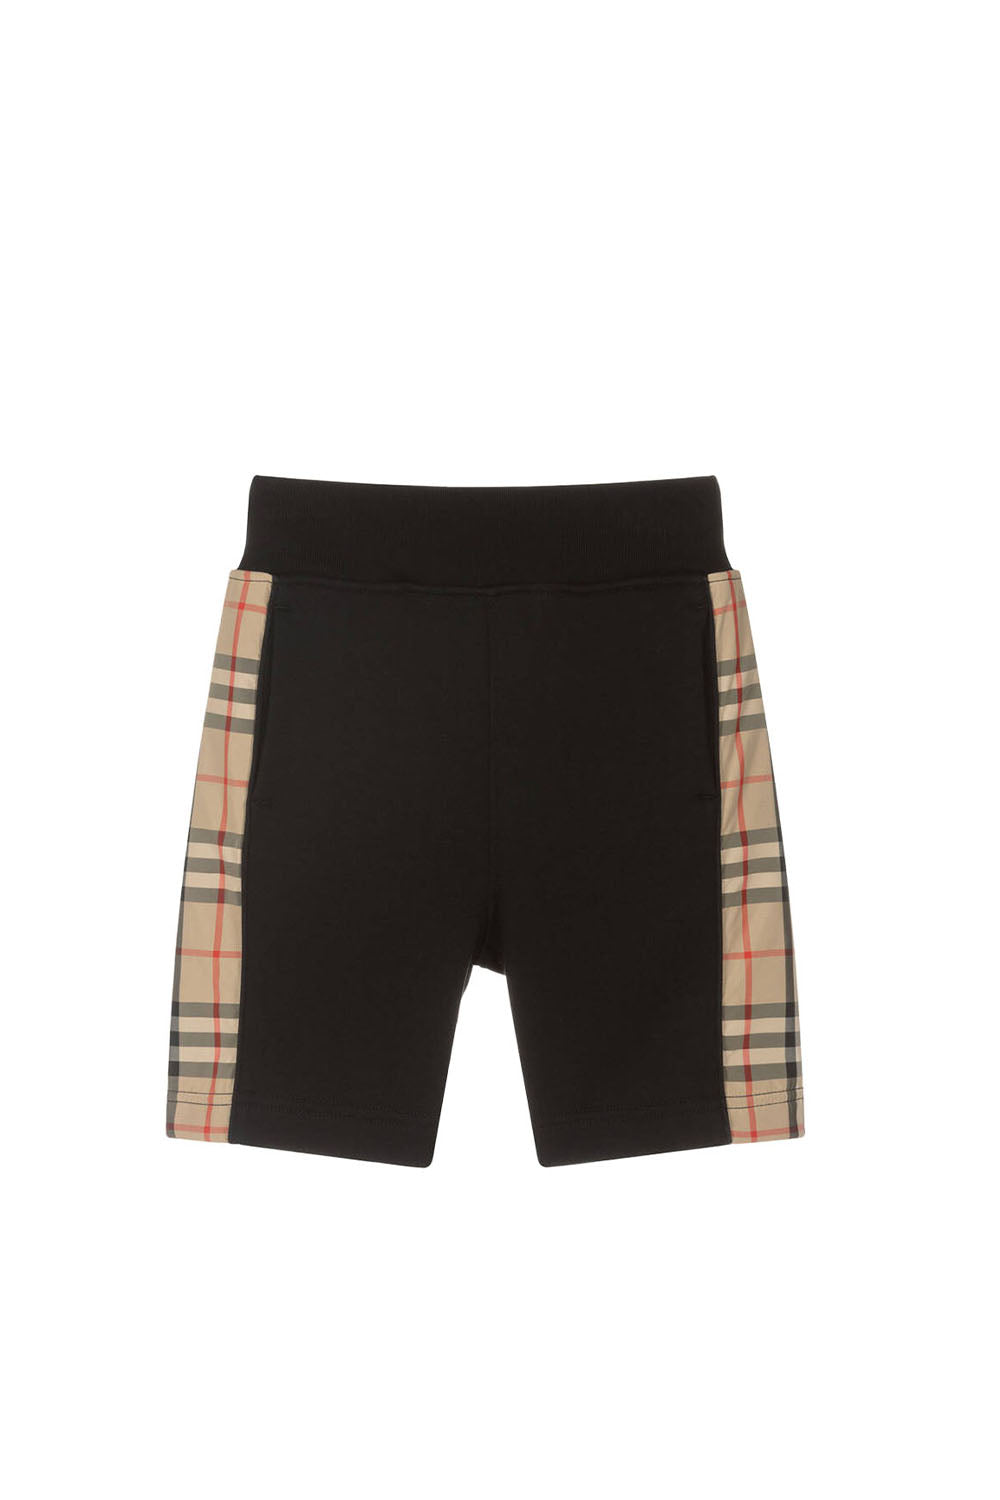 Nolen Shorts for Boys - Maison7